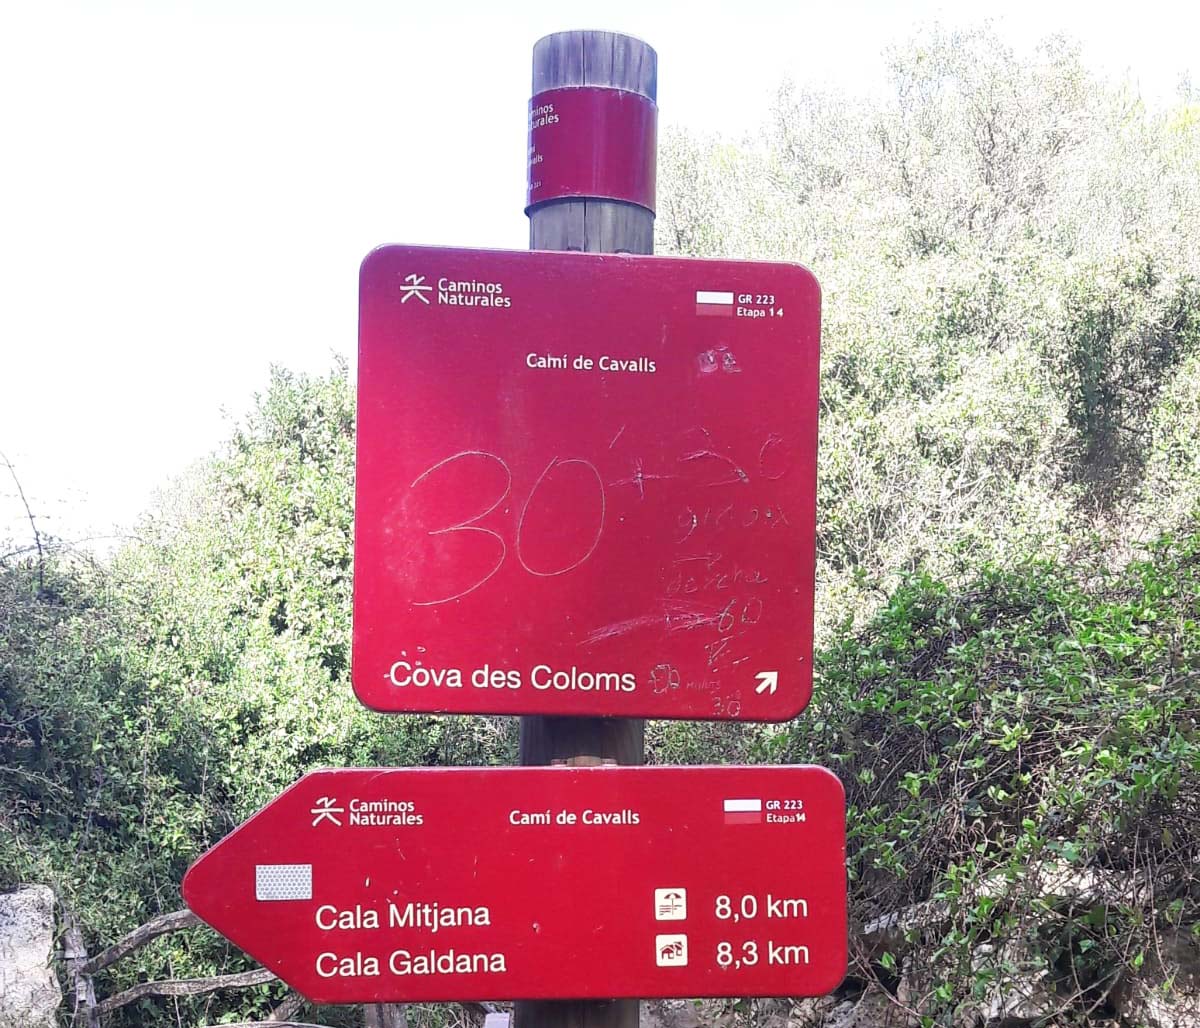 Cami de Cavallas post in Menorca